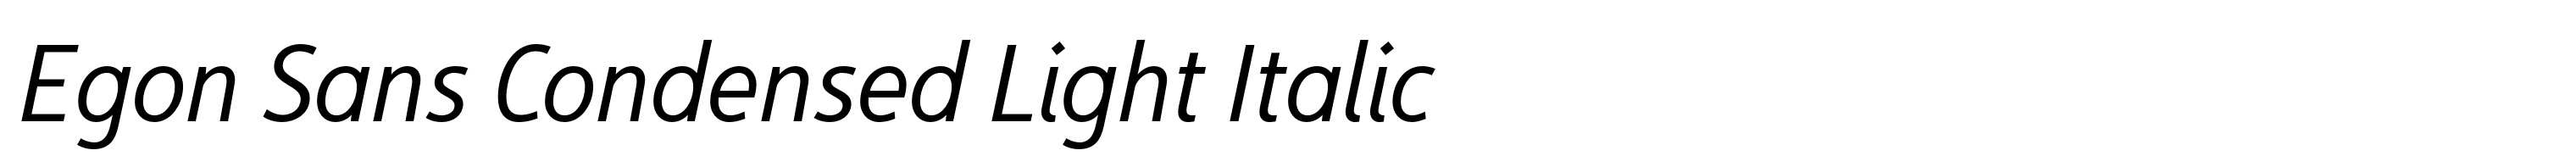 Egon Sans Condensed Light Italic